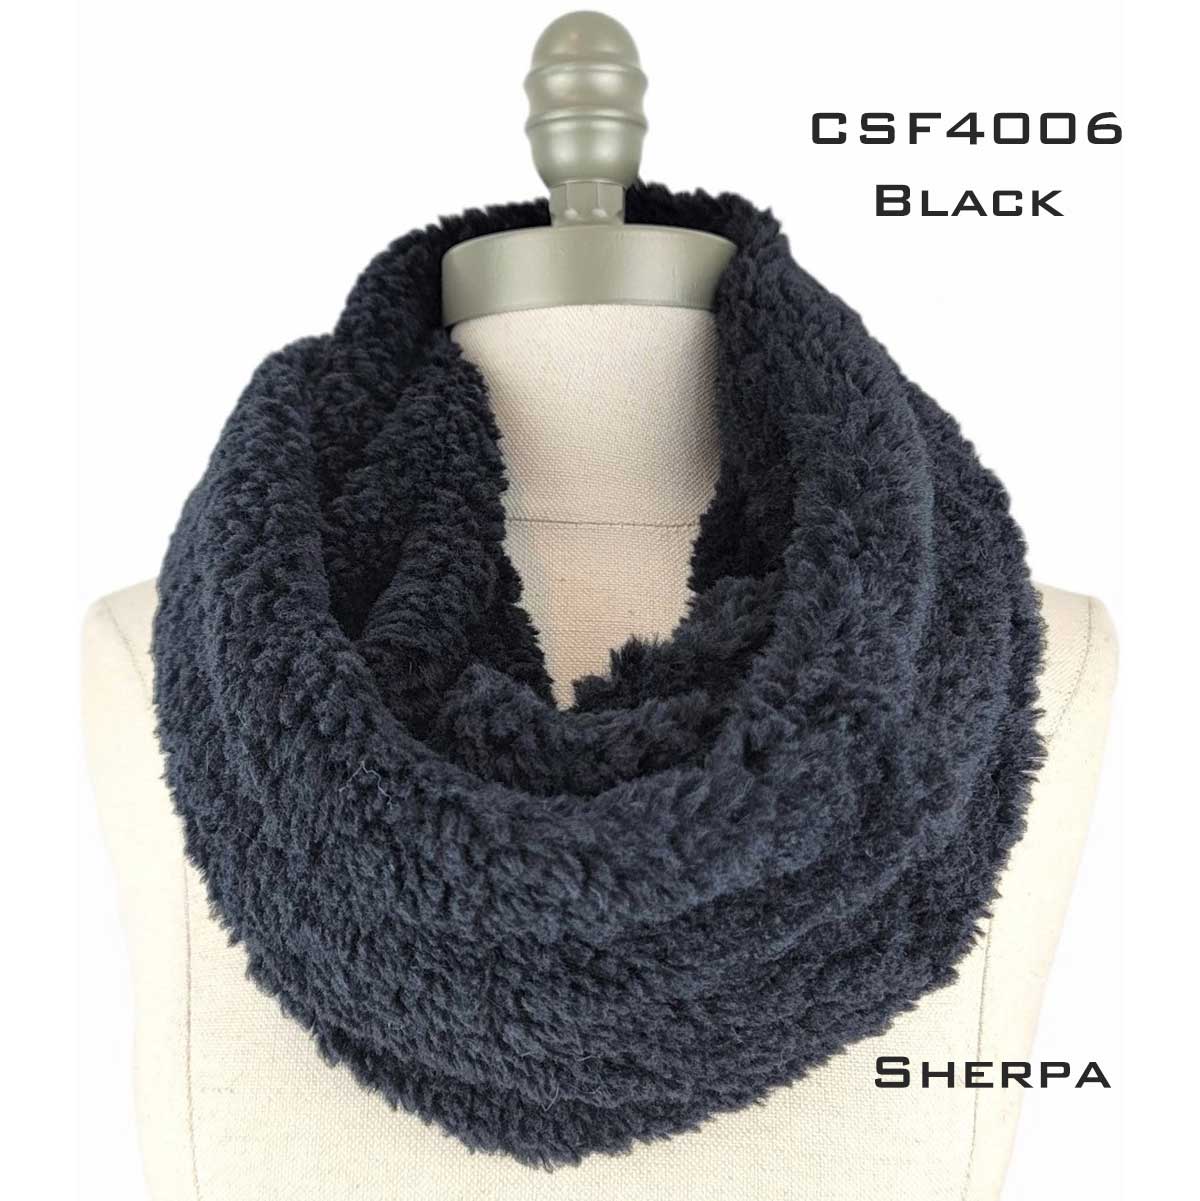 CSF4006 BLACK Sherpa Fleece Infinity Scarf